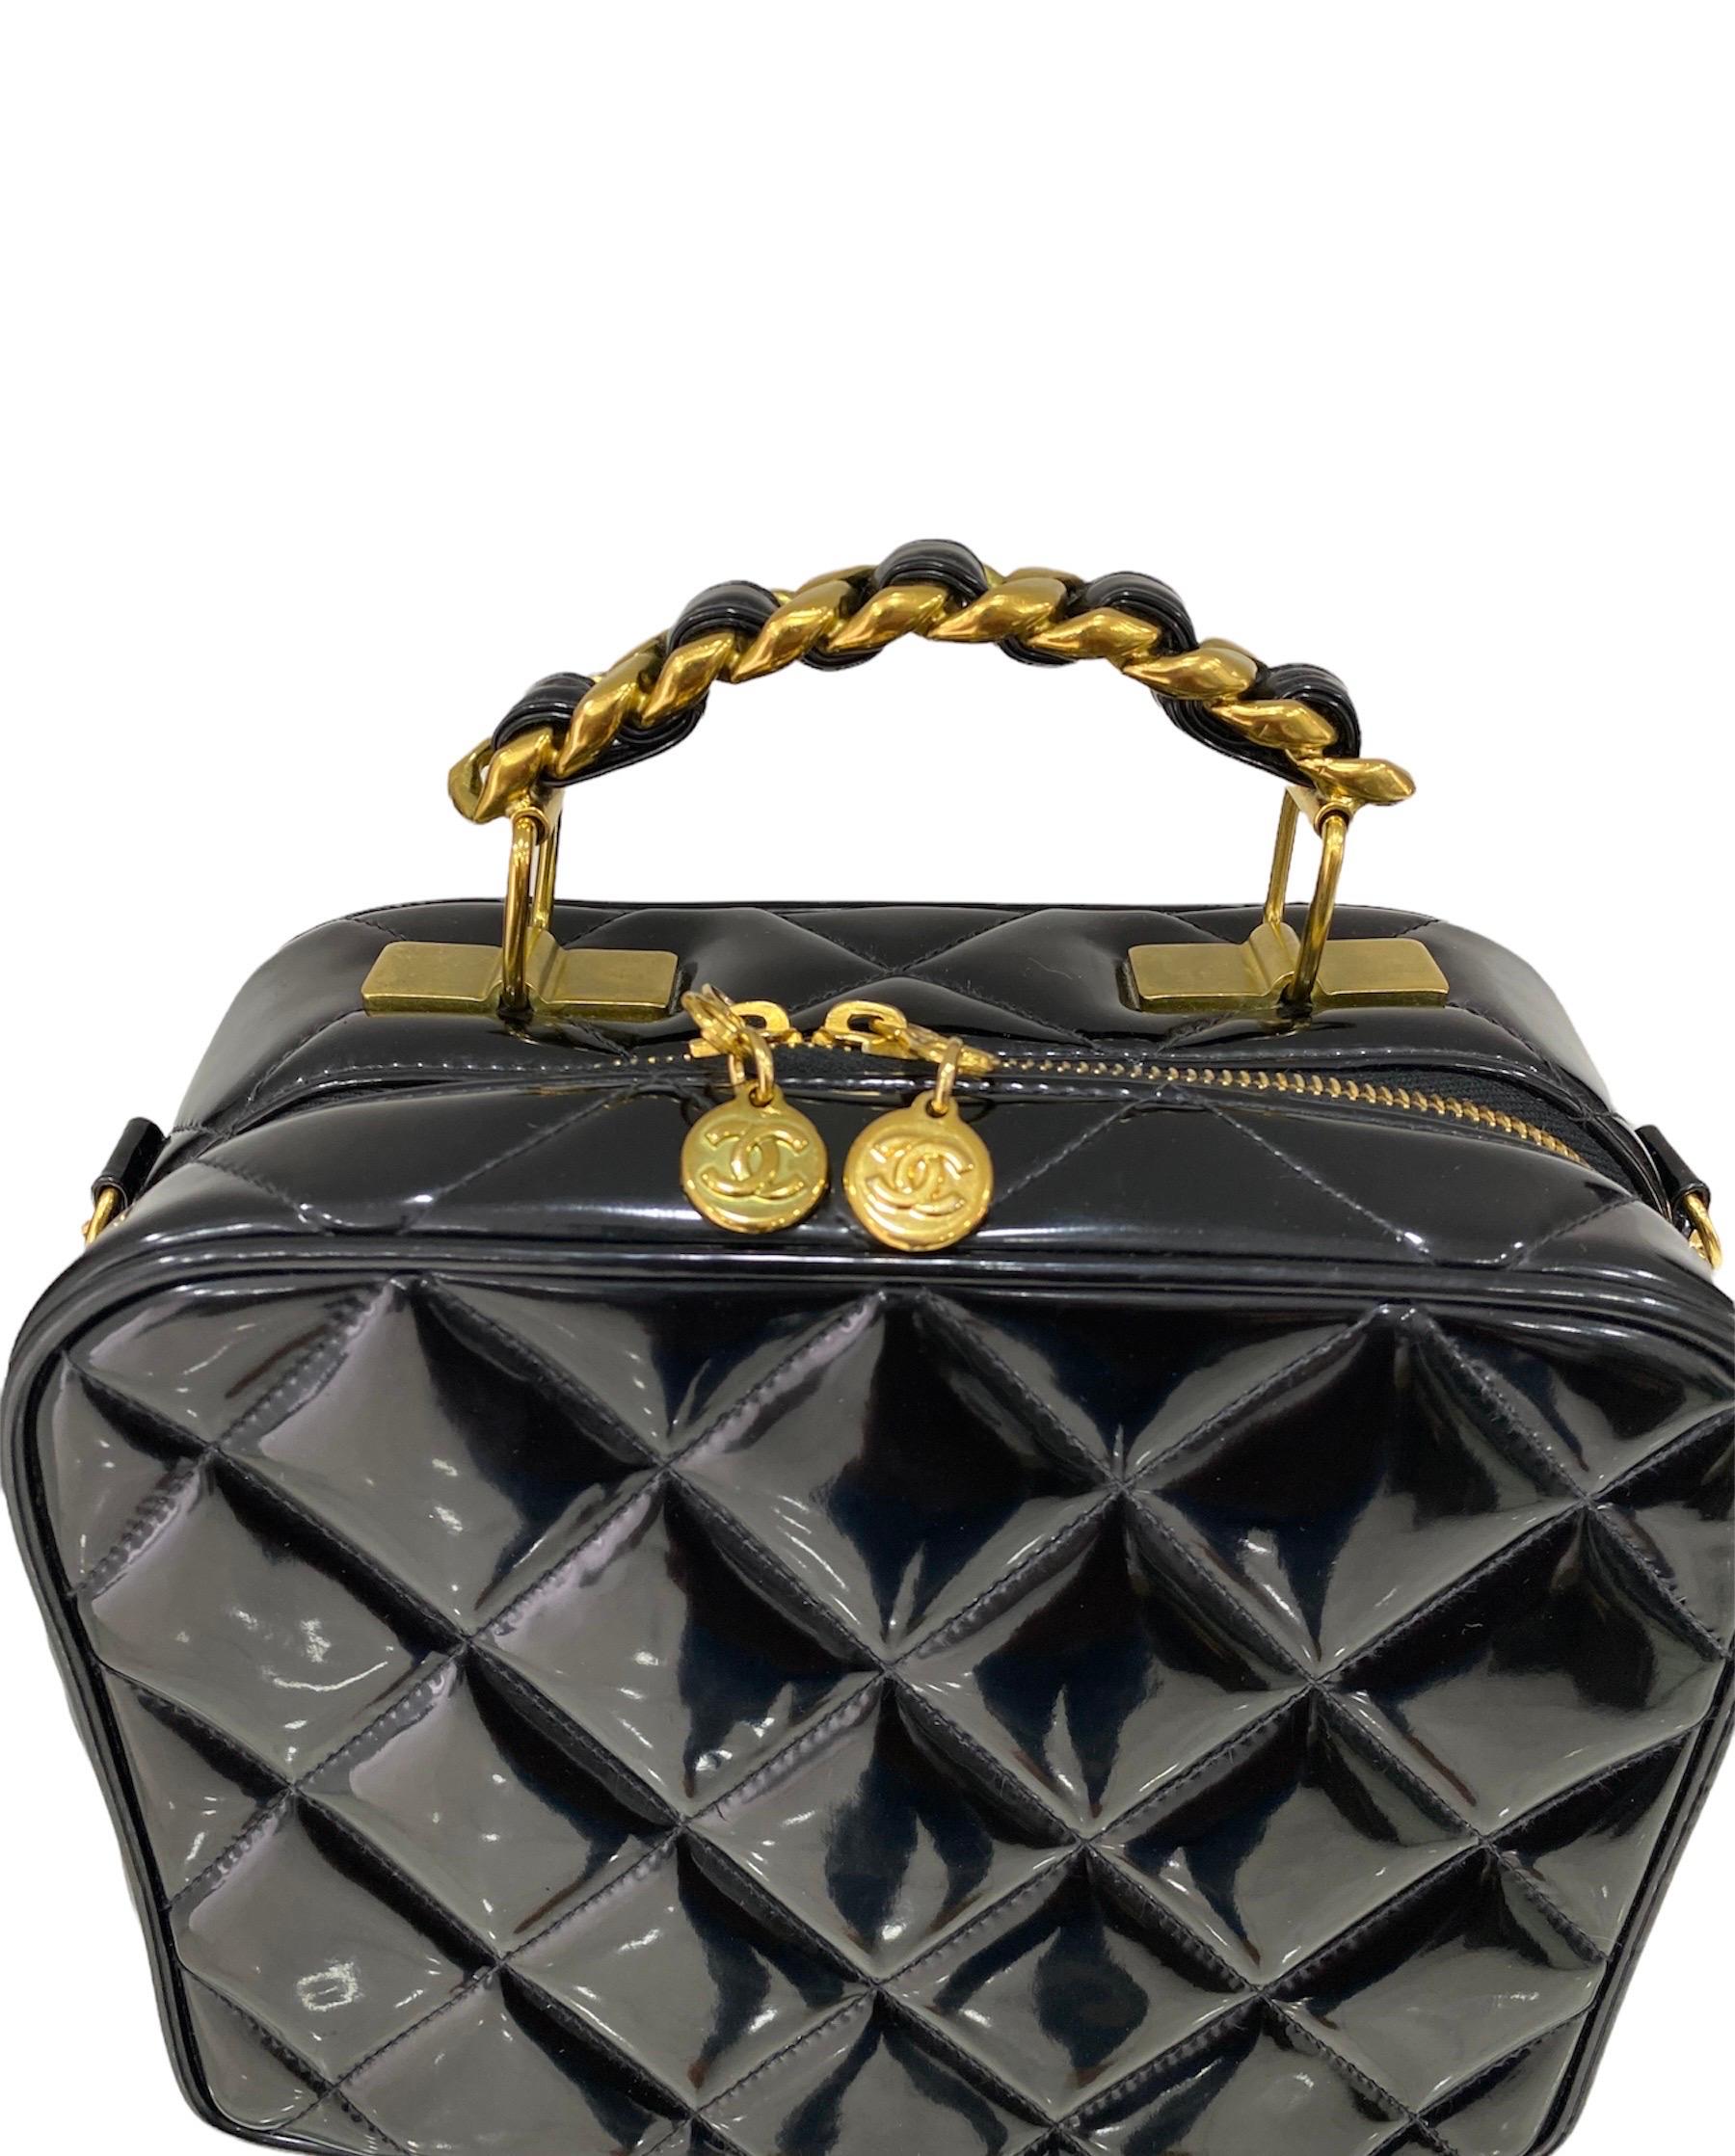 Signierte Chanel-Tasche, Vintage-Modell, Produktionsjahr 94/96, aus schwarzem Lackleder mit goldener Hardware.
Dieses kultige Modell ist mit einem runden Reißverschluss ausgestattet, innen mit schwarzem Glattleder gefüttert und recht